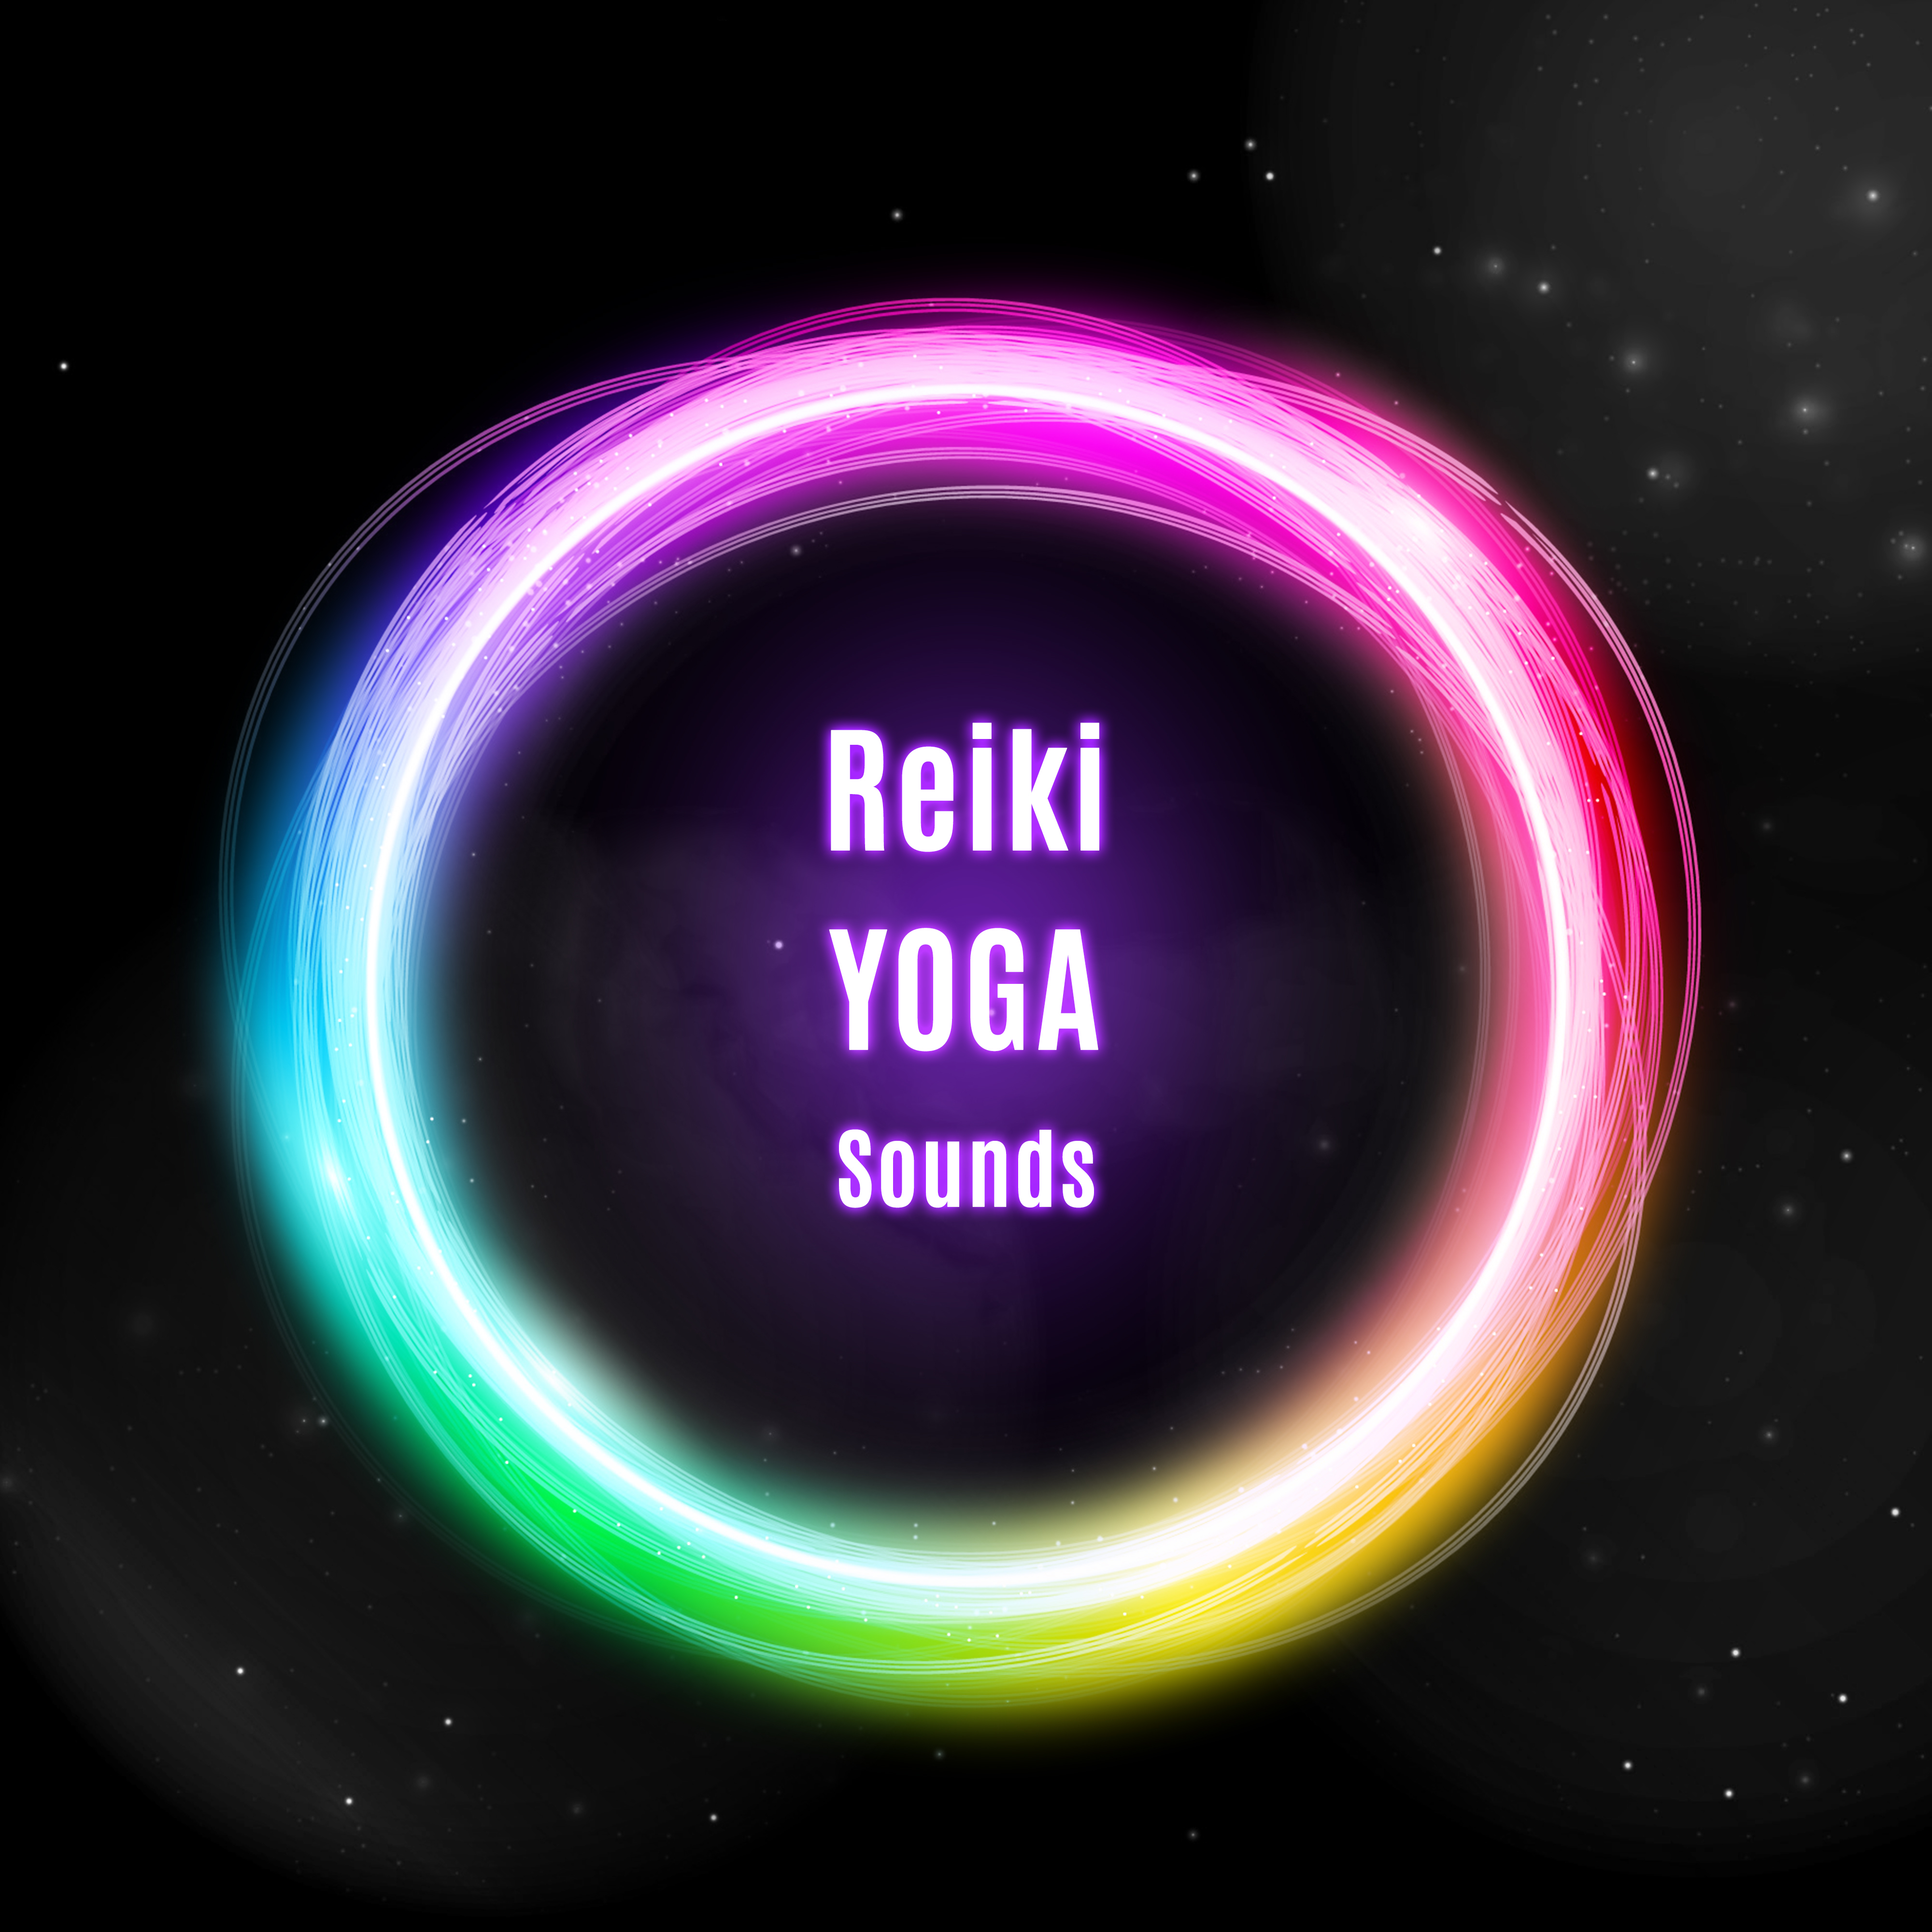 Reiki Yoga Sounds